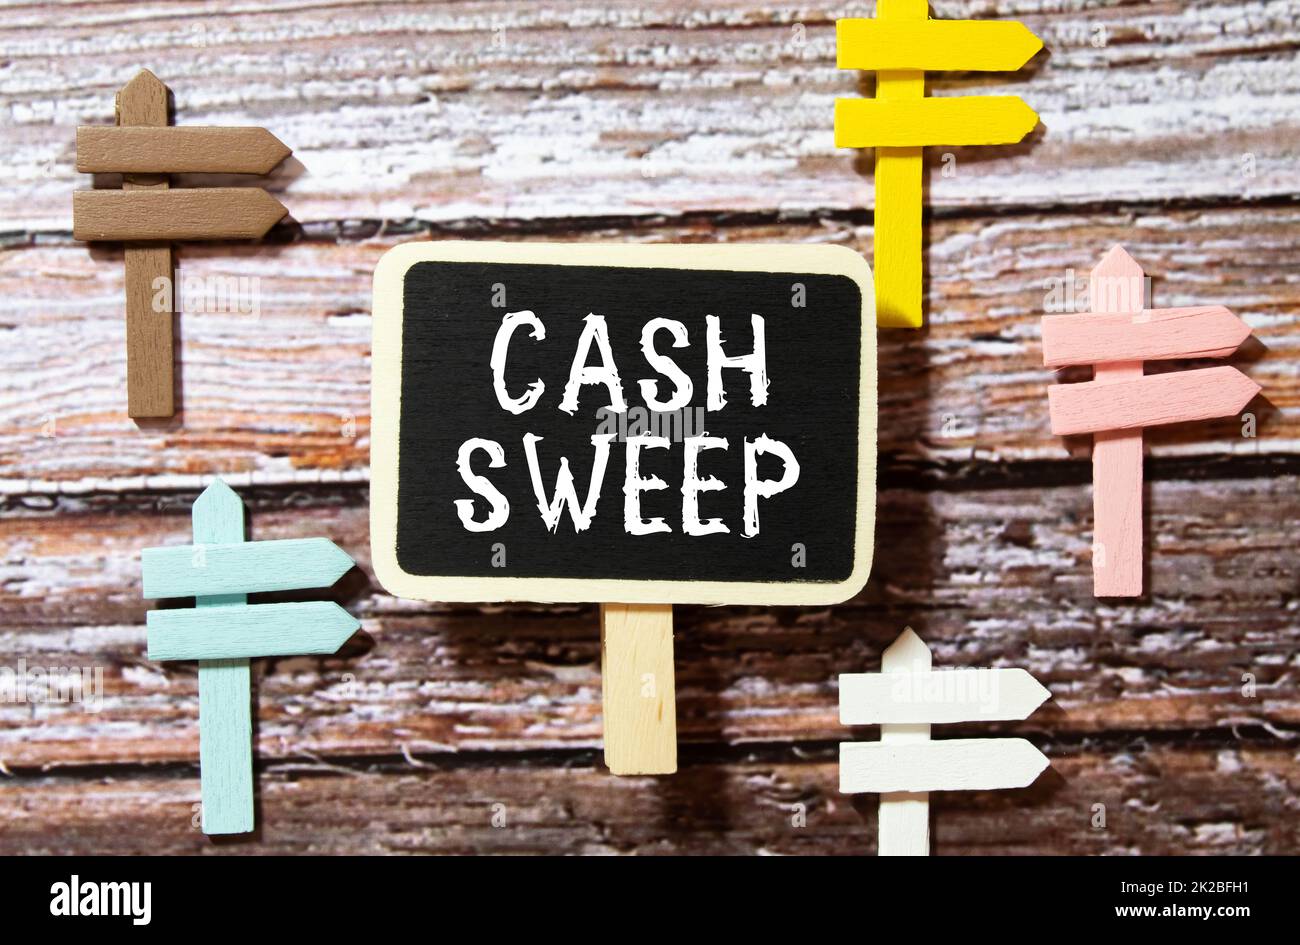 Su una superficie bianca sono contorti dollari, un notebook e un cartoncino con l'iscrizione - Cash sweep. Foto Stock